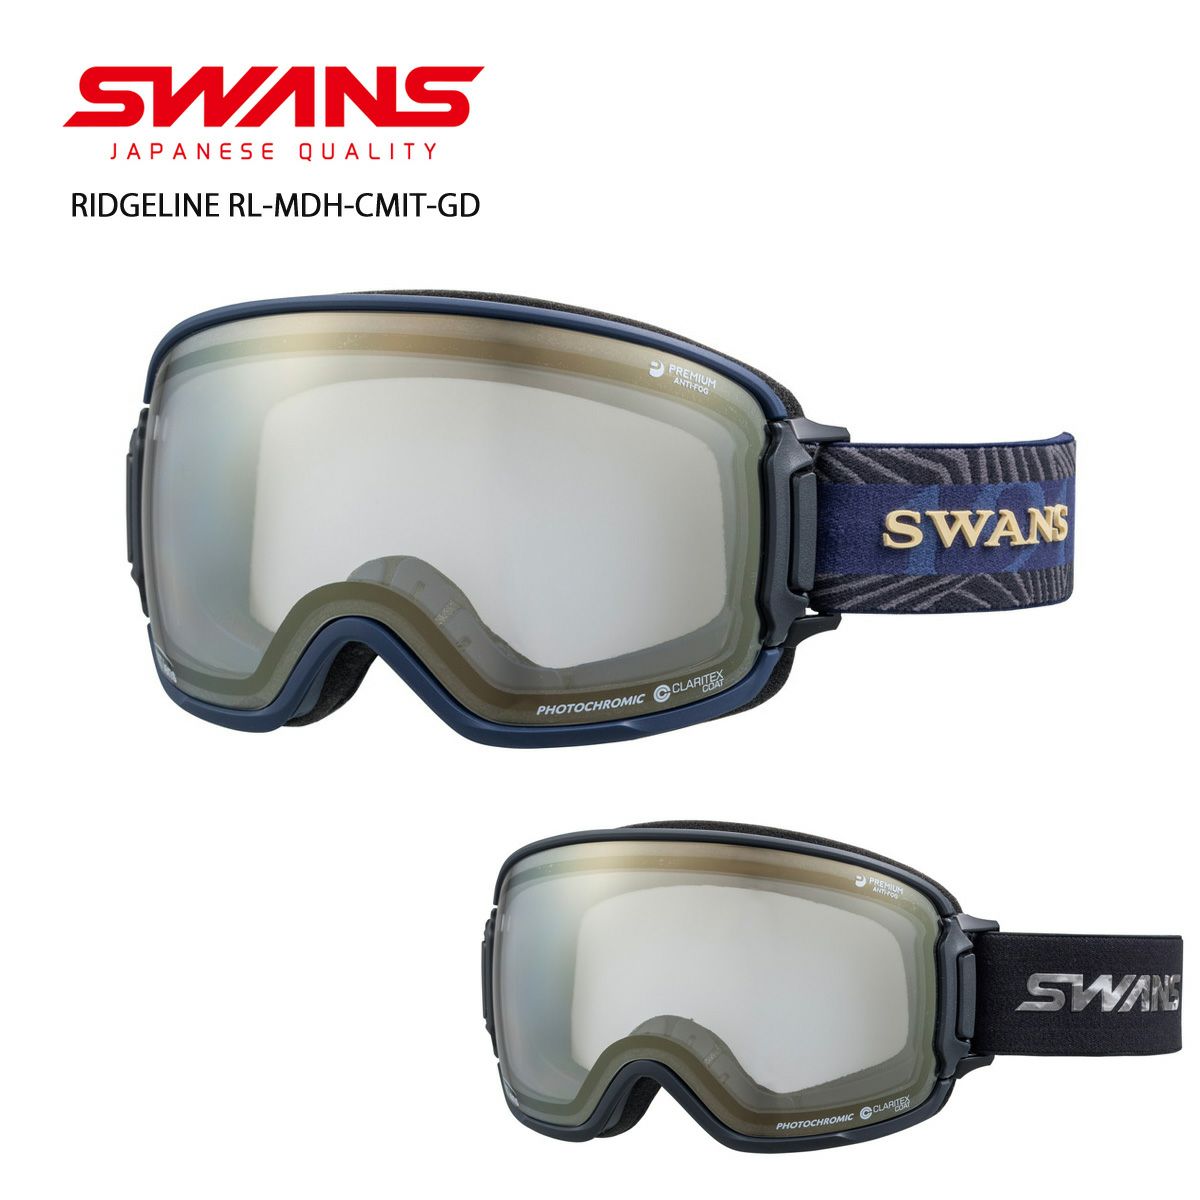 SWANS (スワンズ) 日本製 スノーゴーグル RIDGELINE リッジライン RL-MDH-CU-LG MST ライトシルバーミラー×